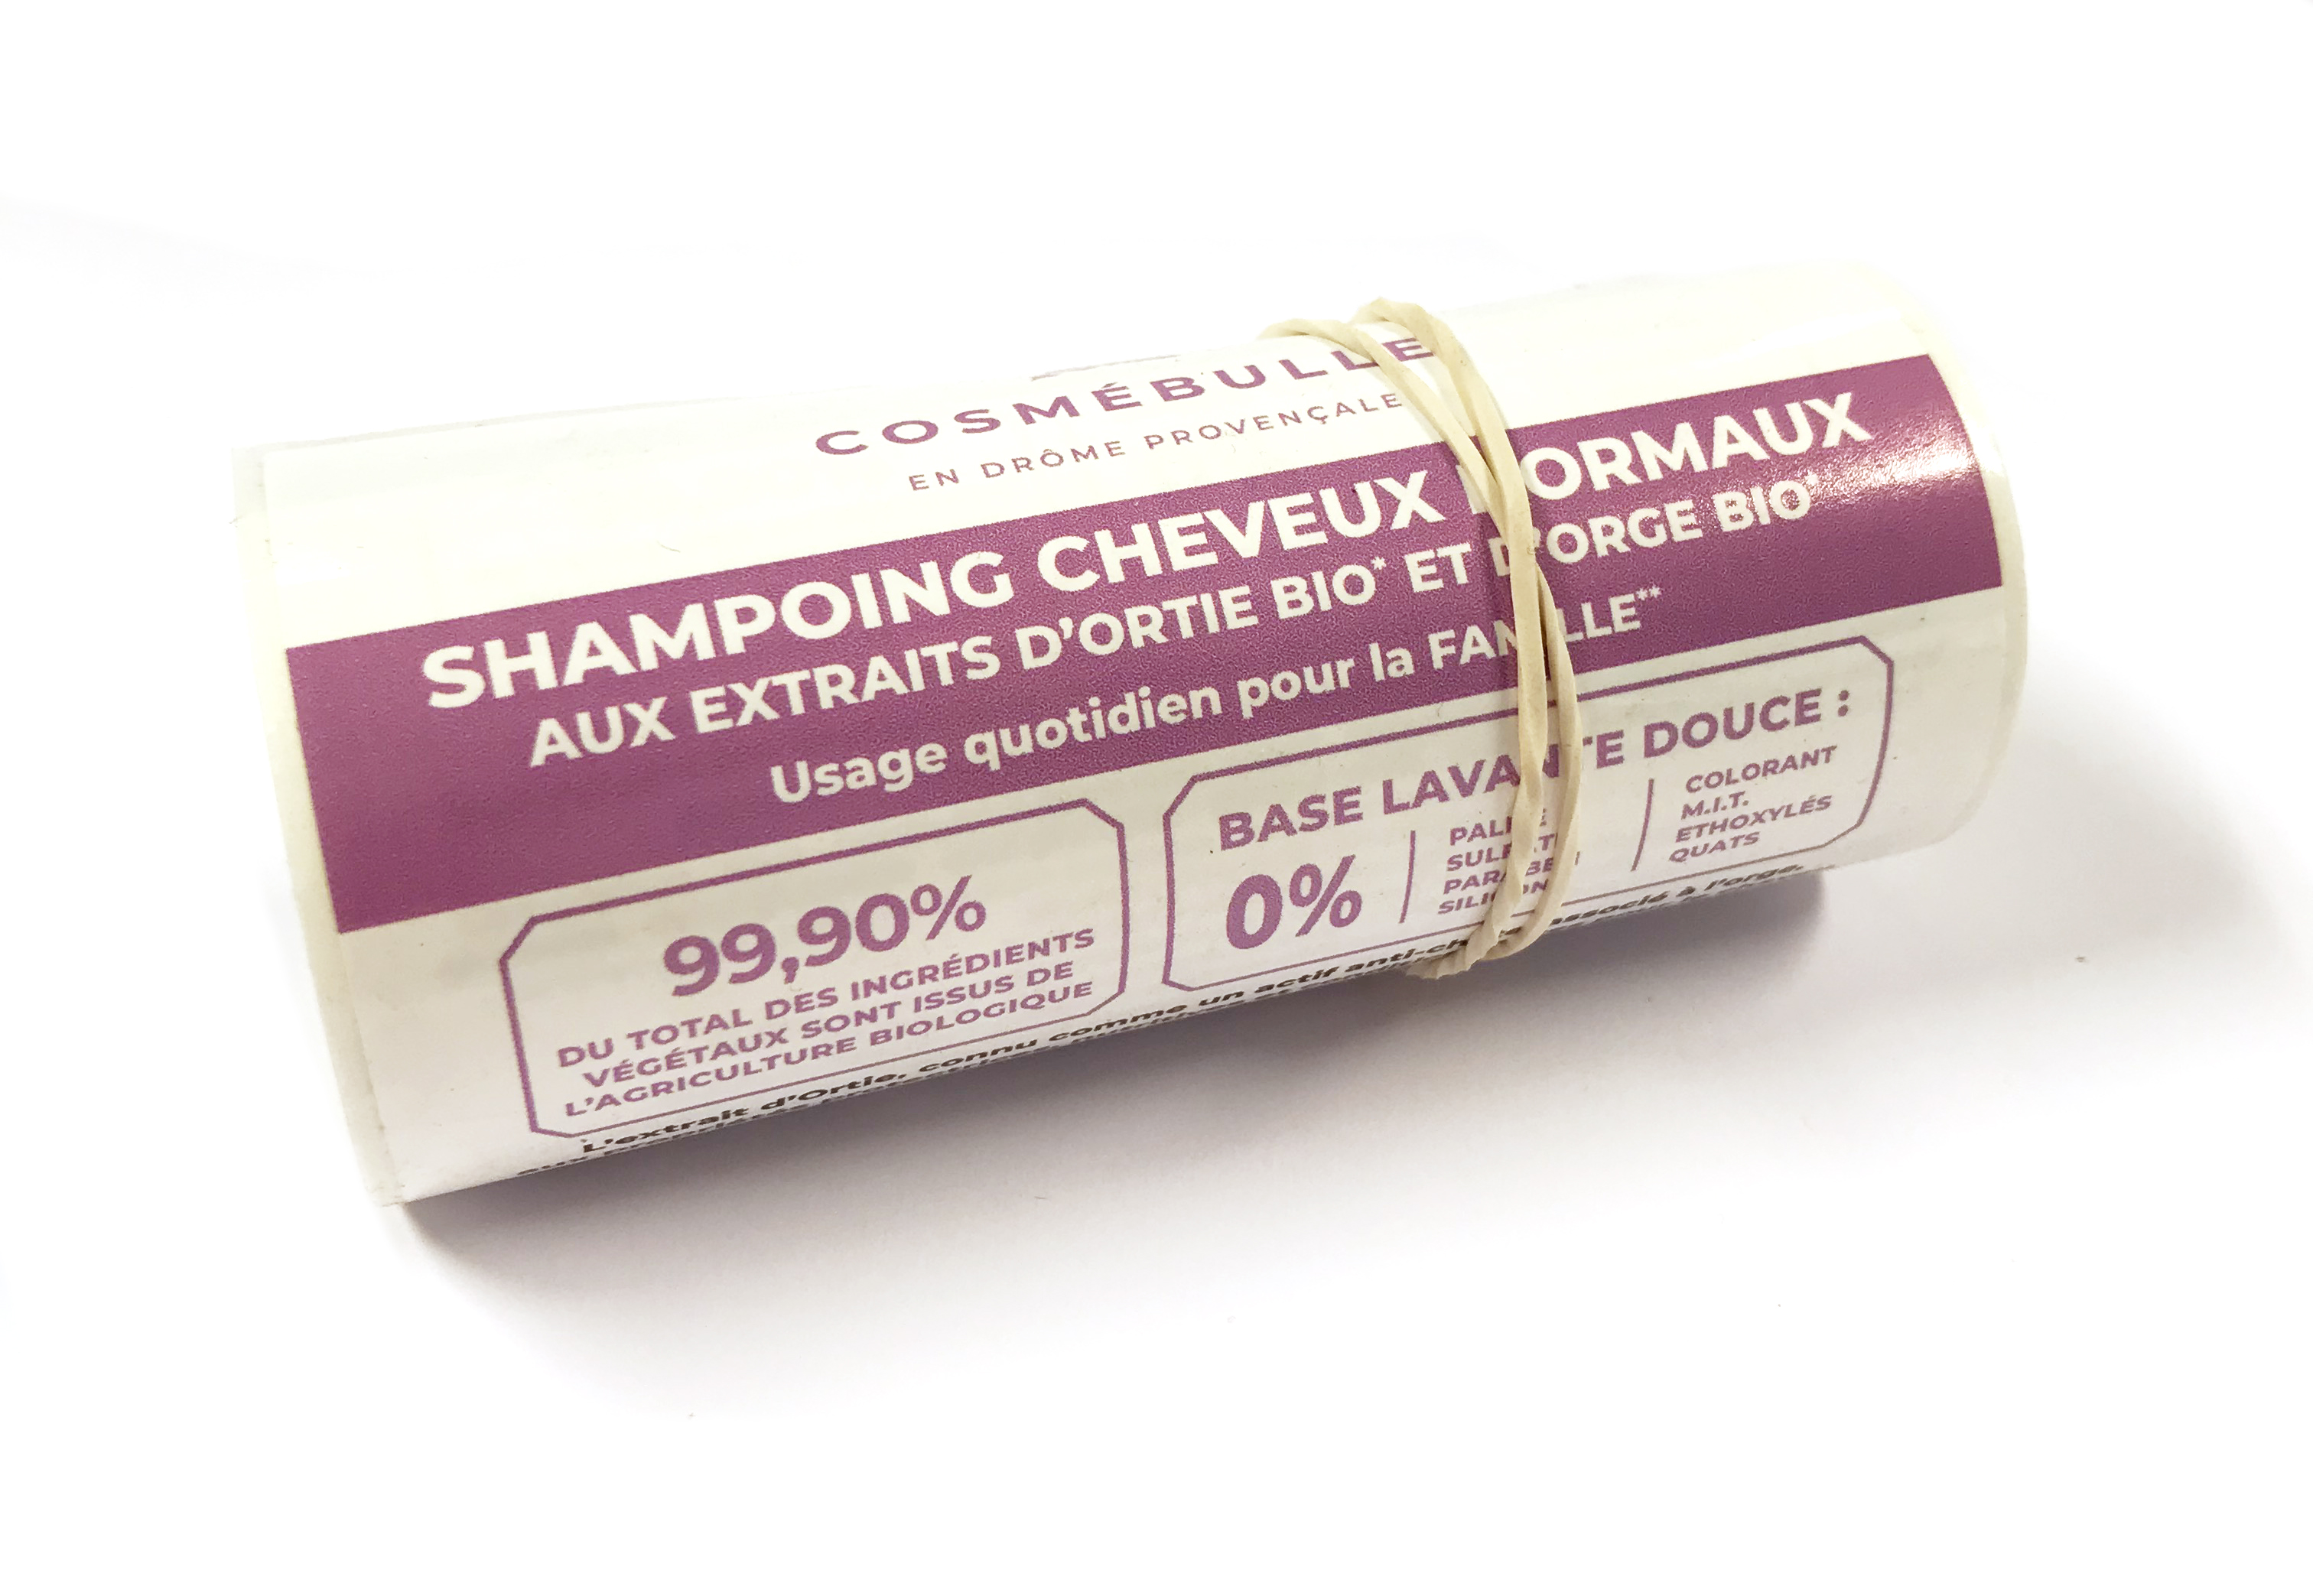 Cosmébulle Rouleau etiq shamp. normaux *50 - 9303